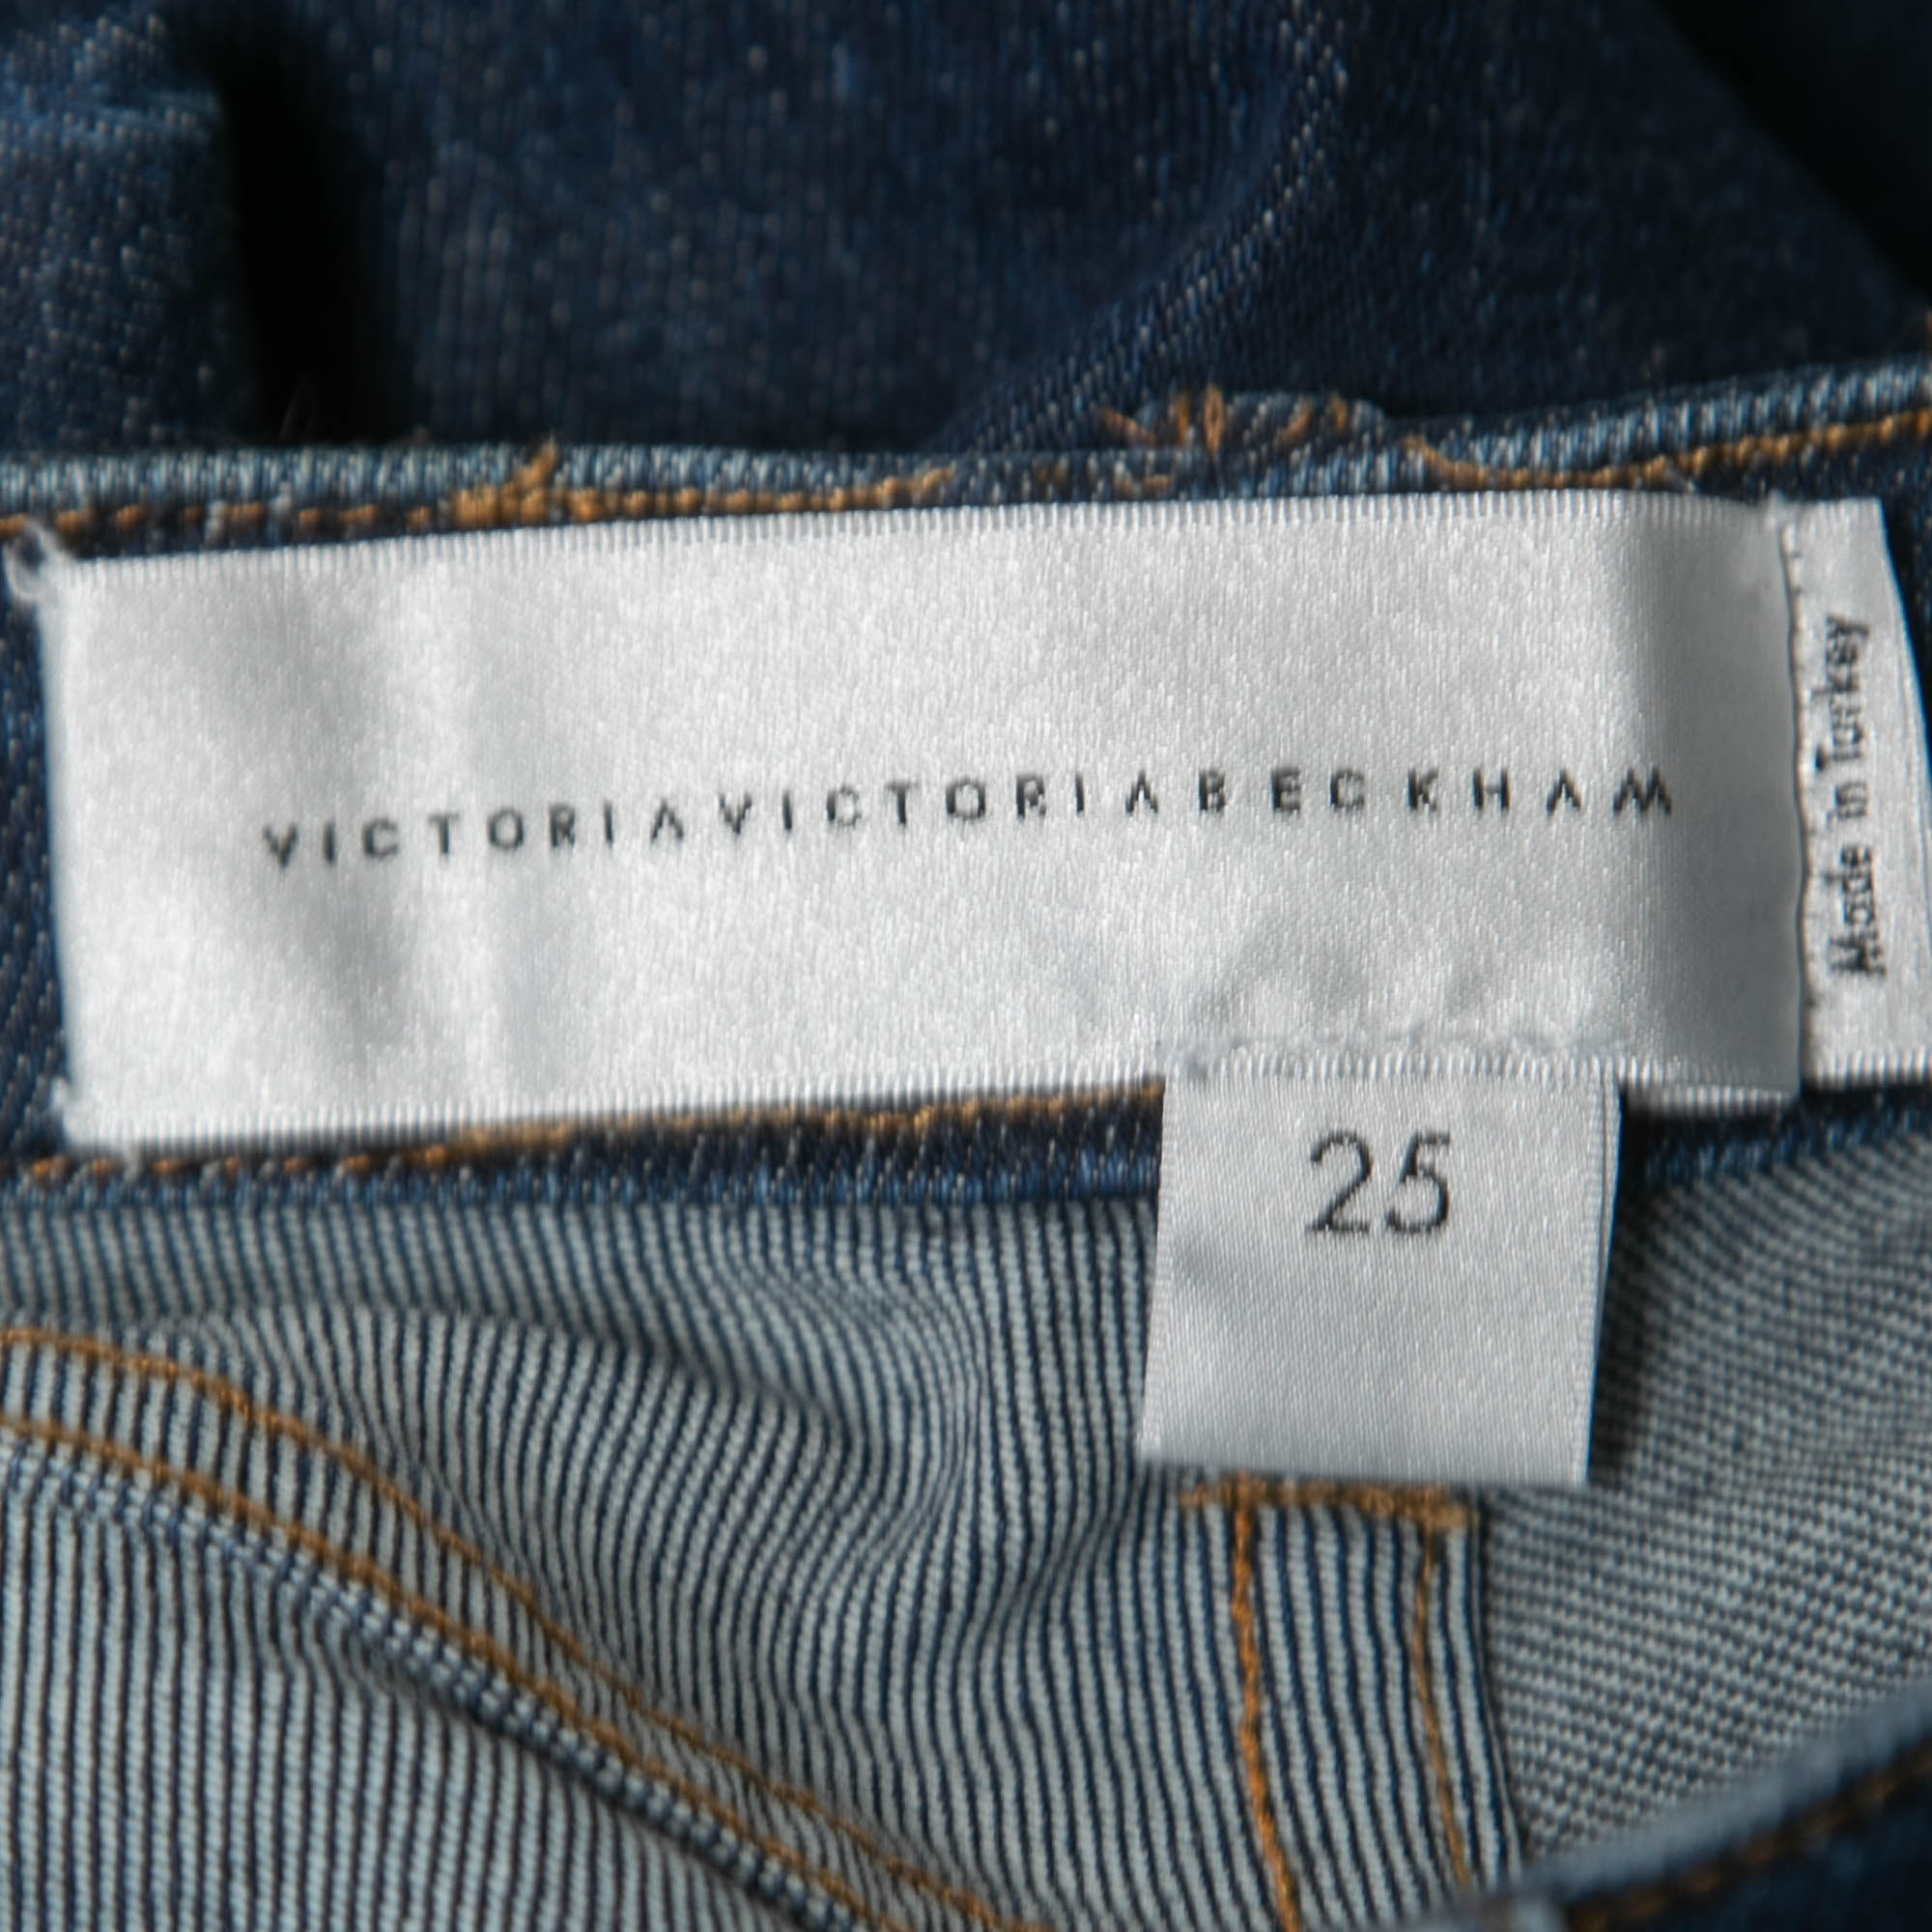 Victoria Victoria Beckham Blue Denim Flared Jeans S Waist 25